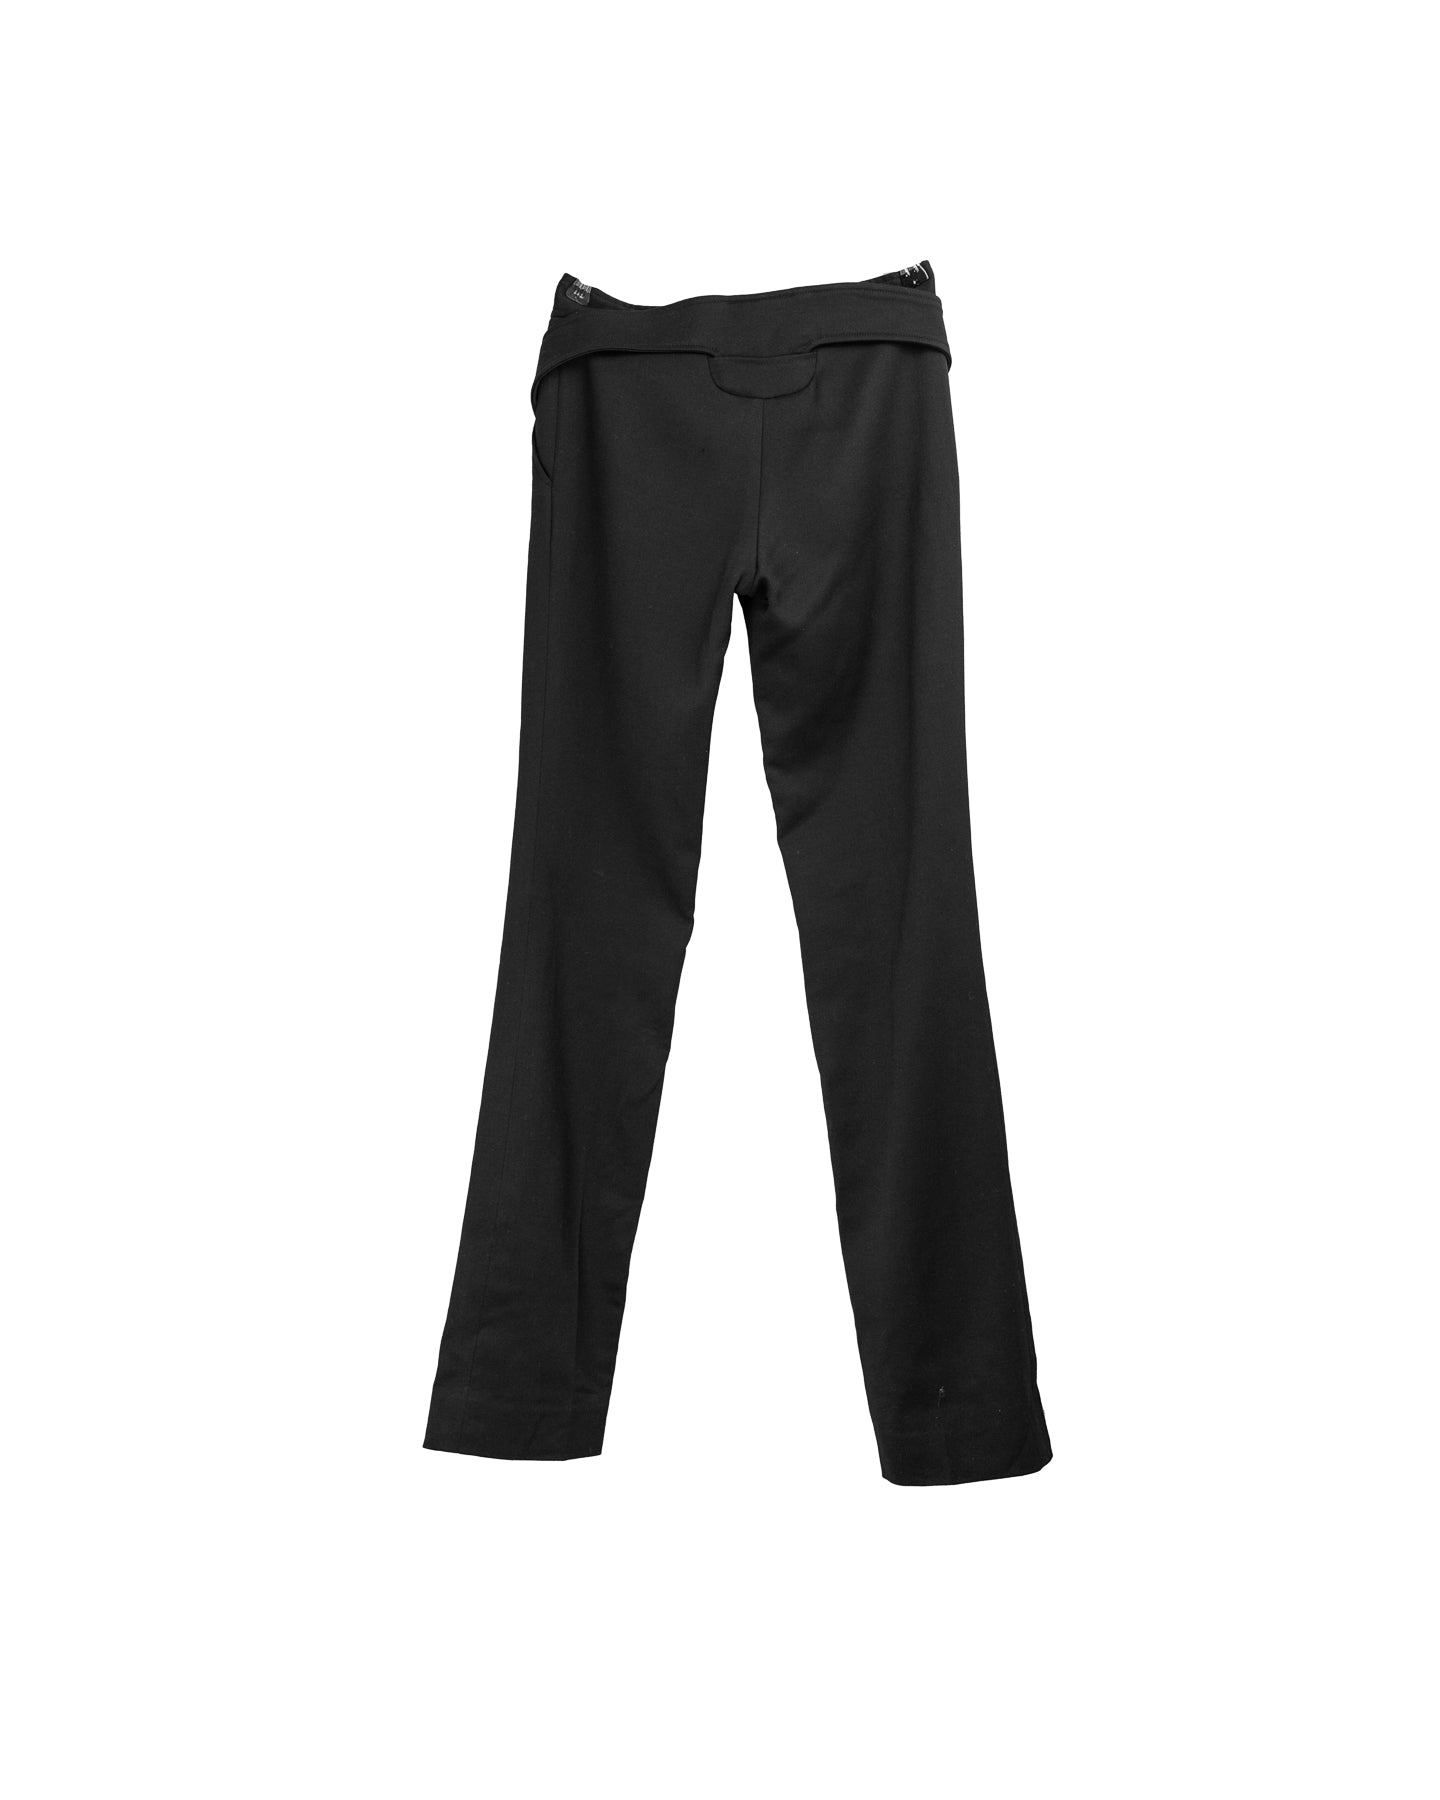 Versace Classic Pantalon noir taille haute - taille 38